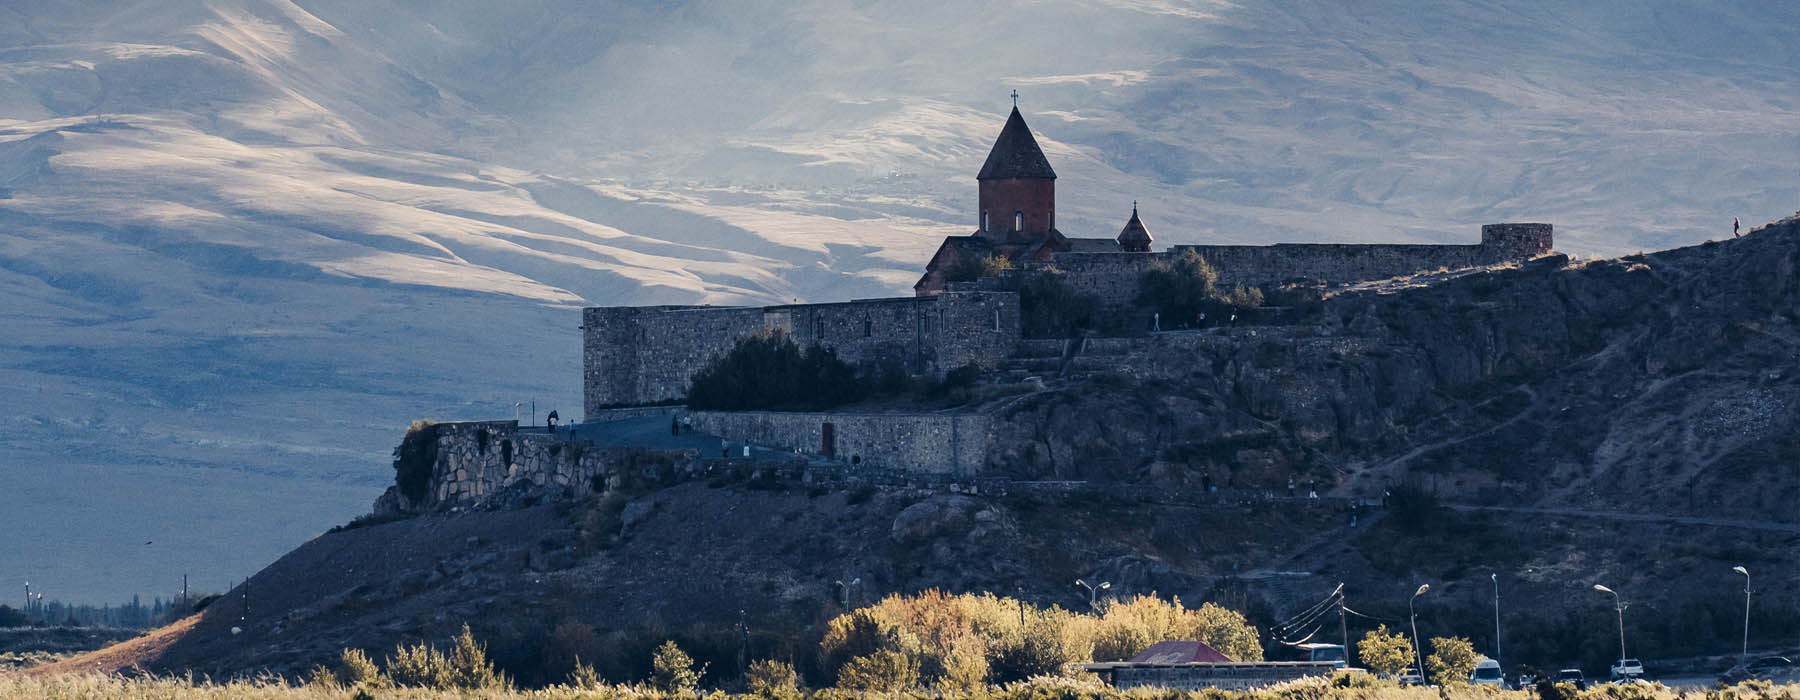 Grands espaces Arménie